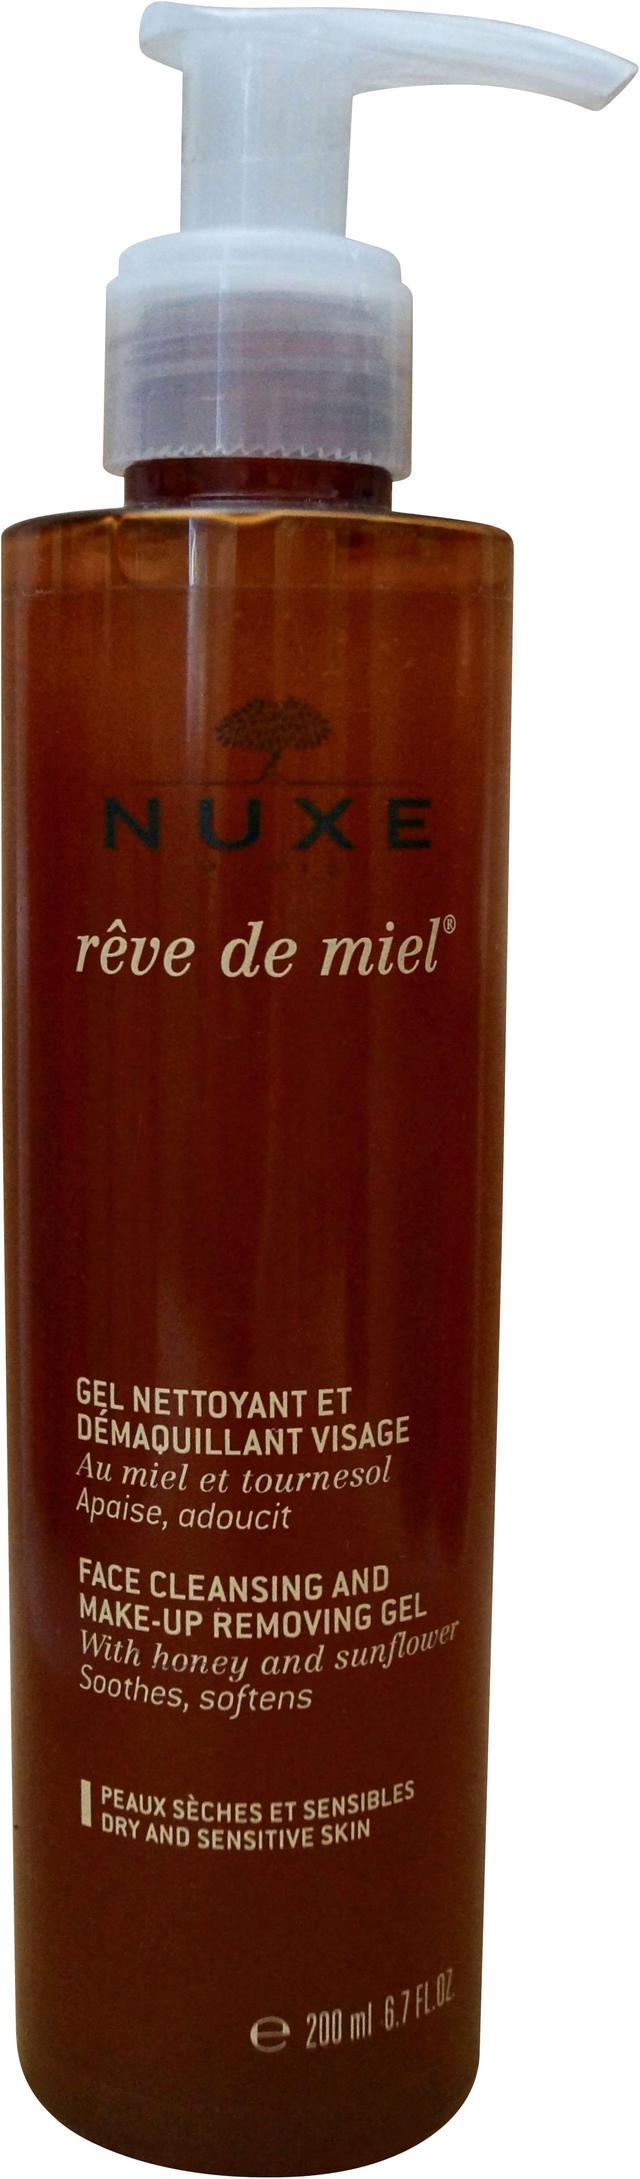 Cleansing & Reve Face Makeup Miel De Removing Nuxe 200ml/6.7oz -